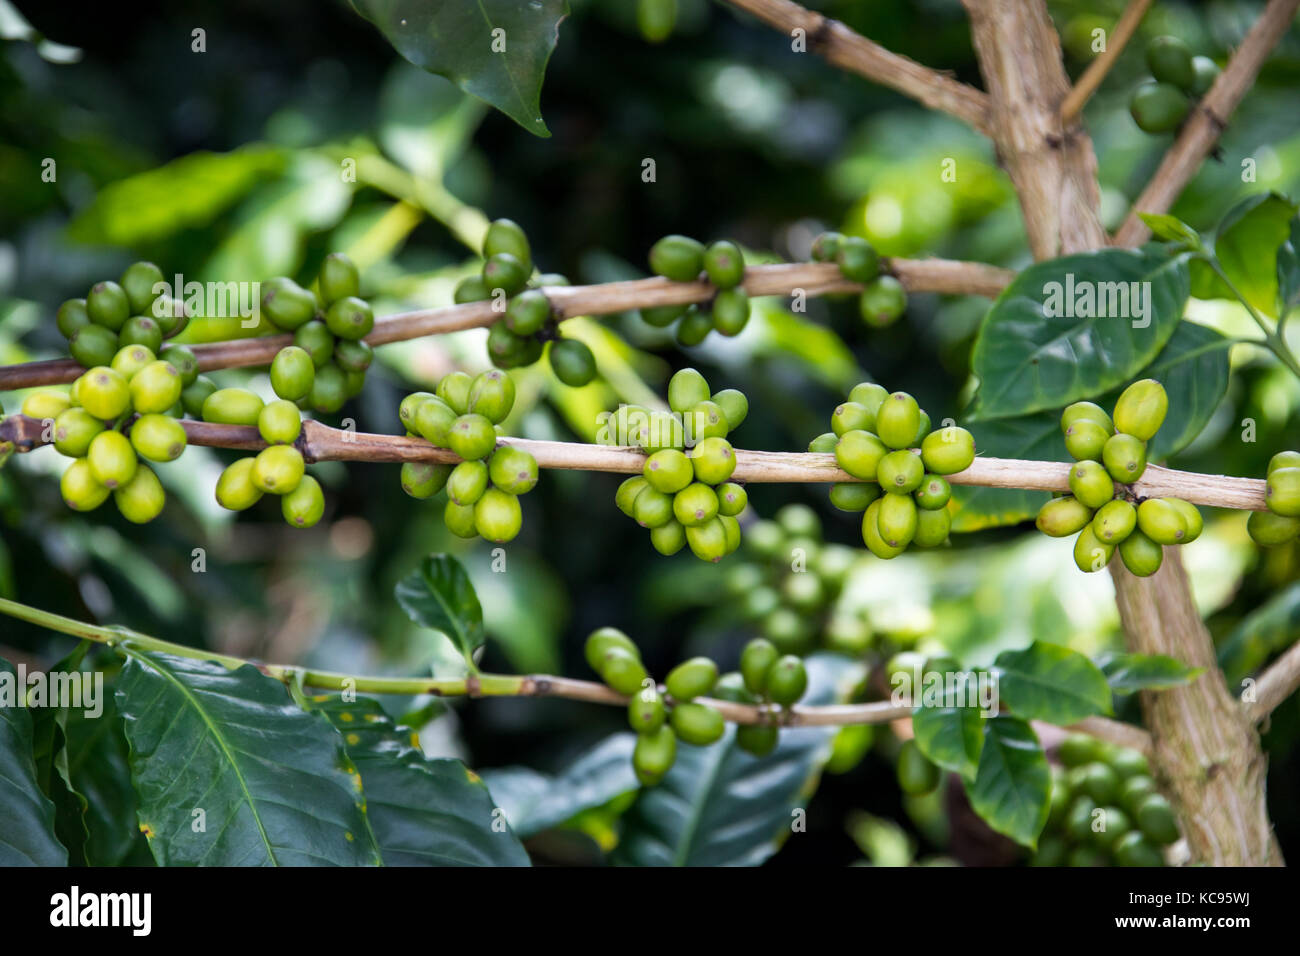 Unripe green coffee beans, Hacienda Venecia Coffee Farm, Manizales, Colombia Stock Photo